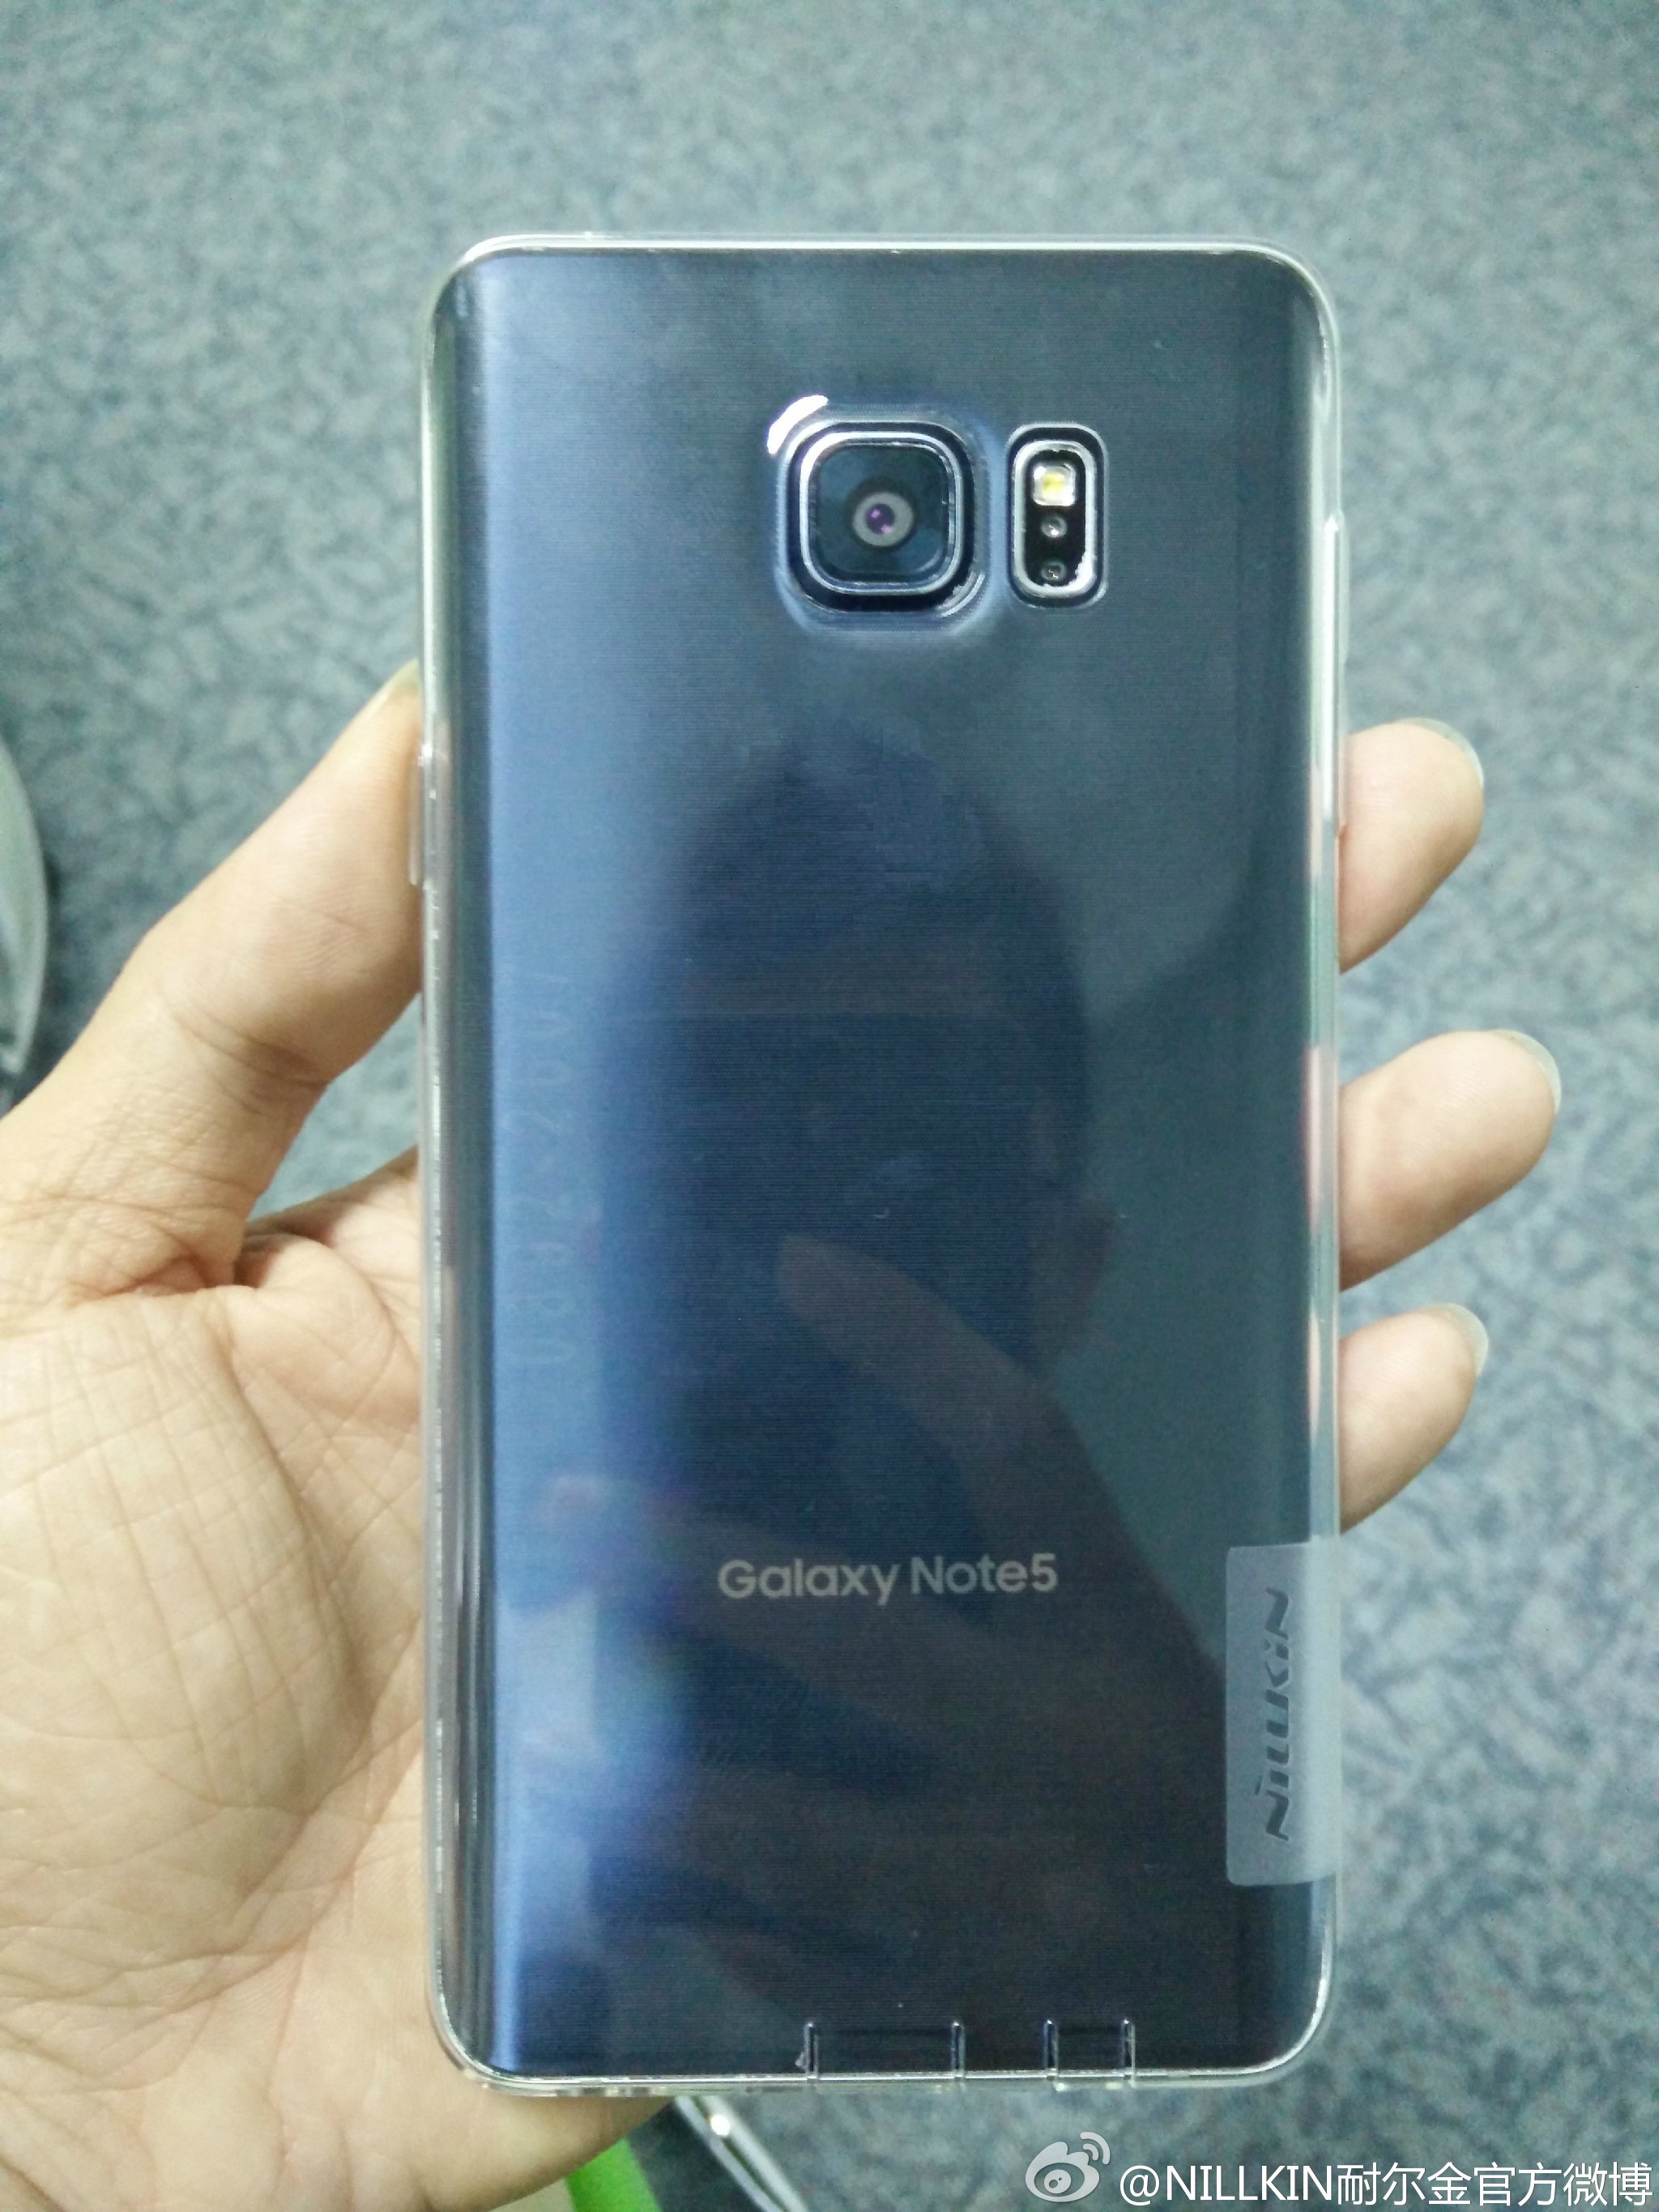 Samsung-Galaxy-Note-5-foto-leaked-2.jpg